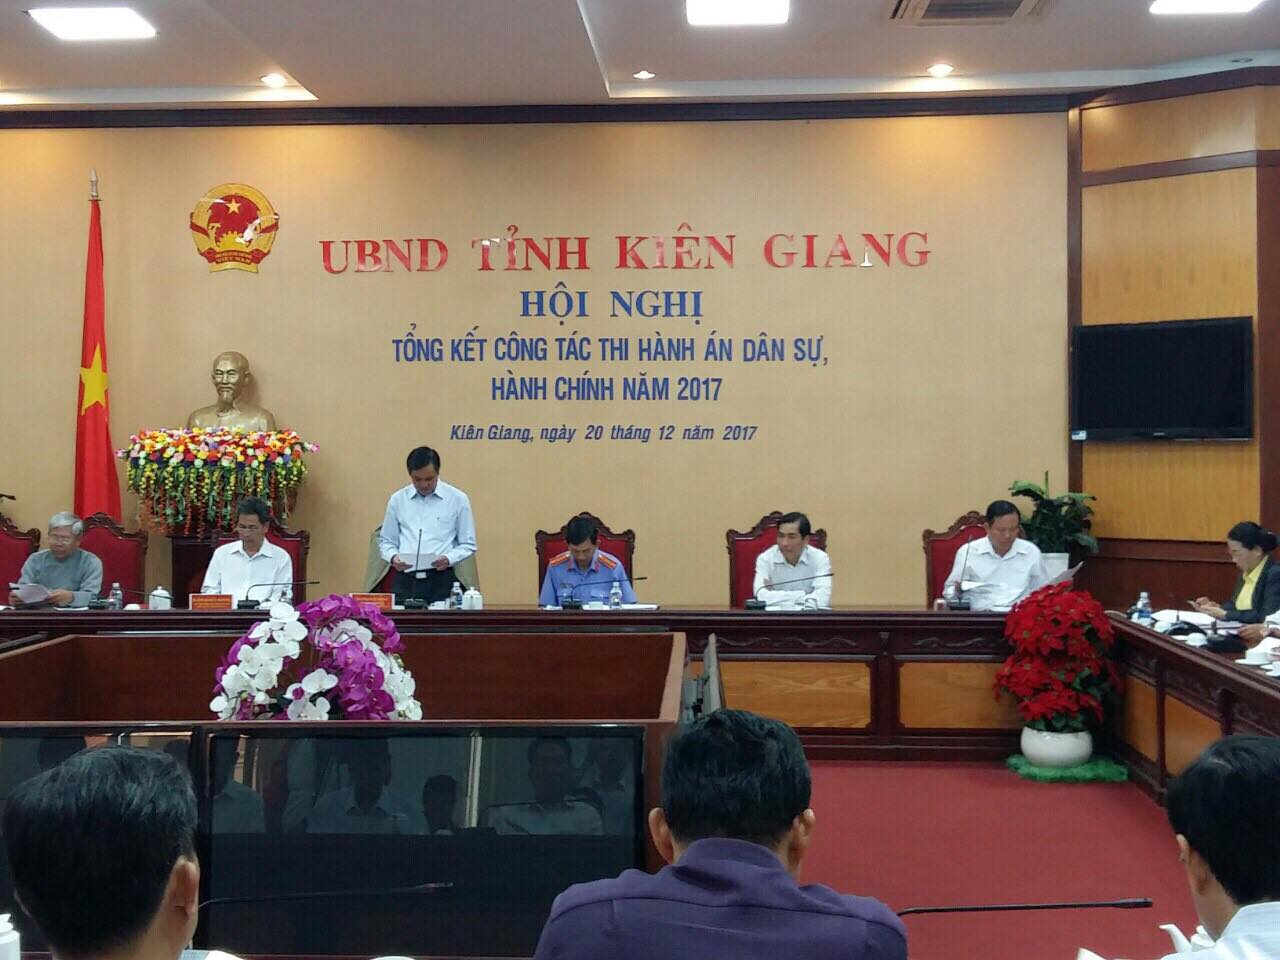 Ủy ban nhân dân tỉnh Kiên Giang tổ chức Hội nghị triển khai công tác Thi hành án dân sự, hành chính năm 2018